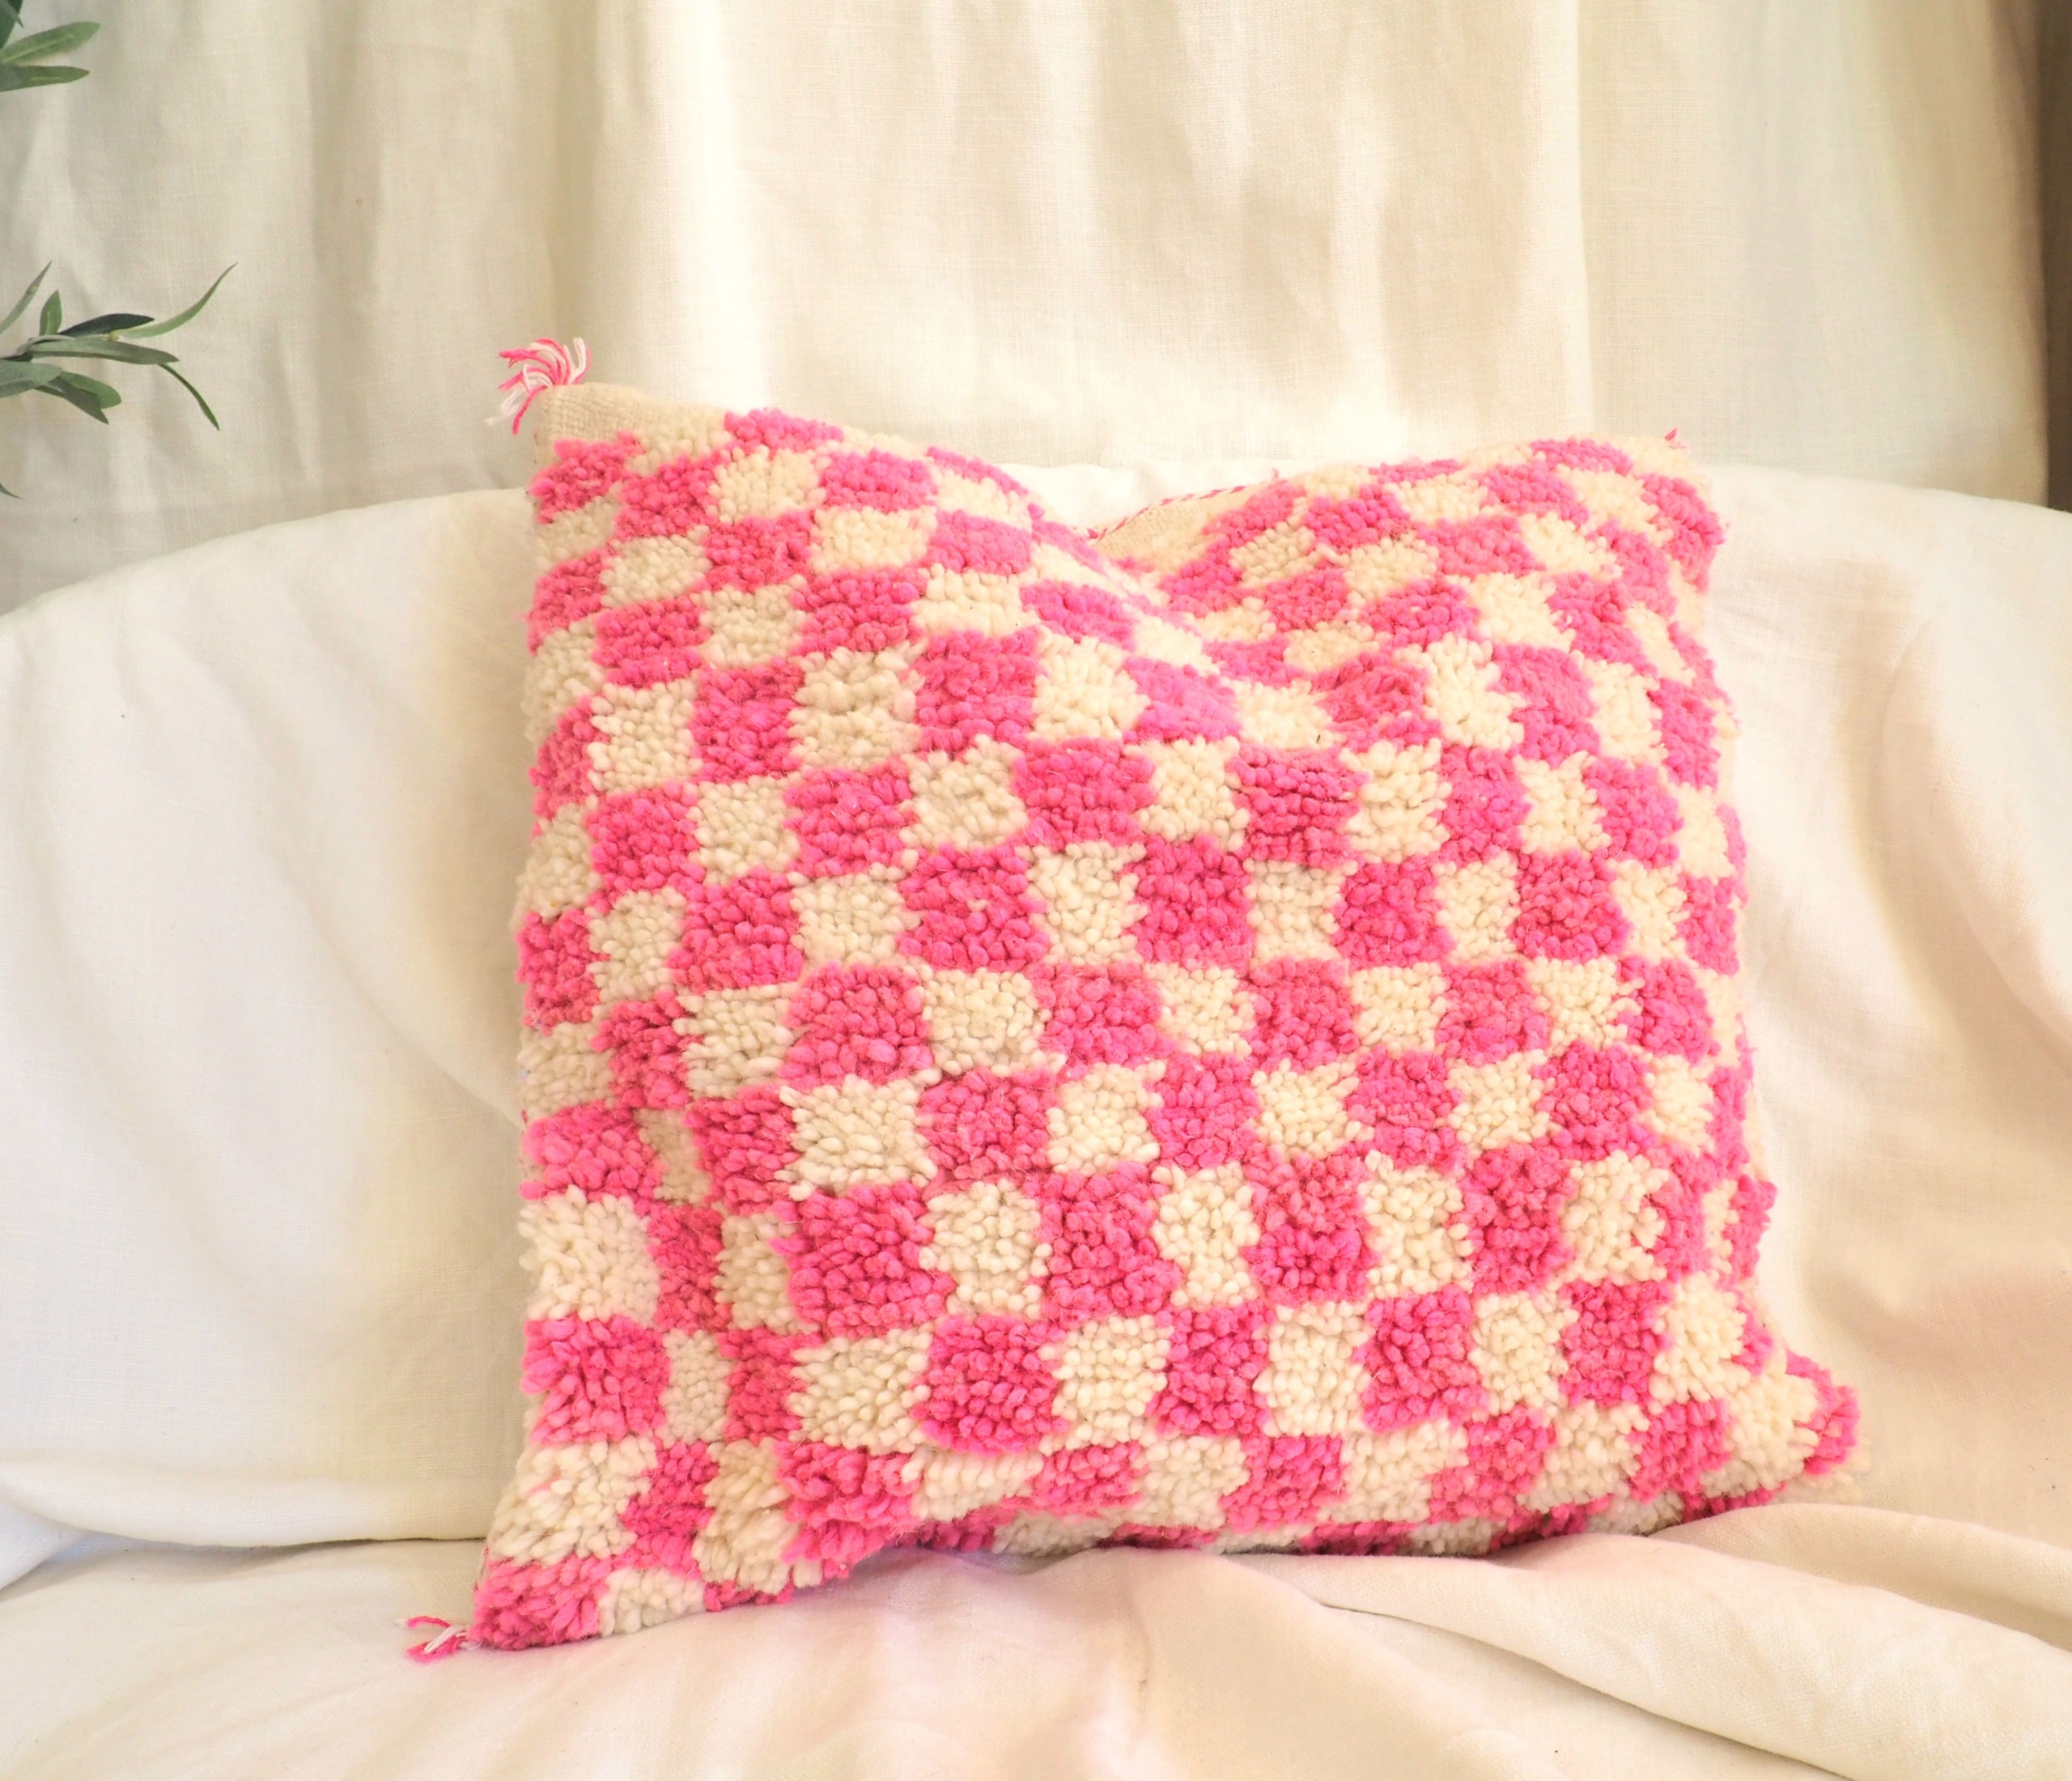 Housse de coussin en pure laine réalisée à la main au Maroc à partir d'un tapis à carrés roses sur fond blanc cassé